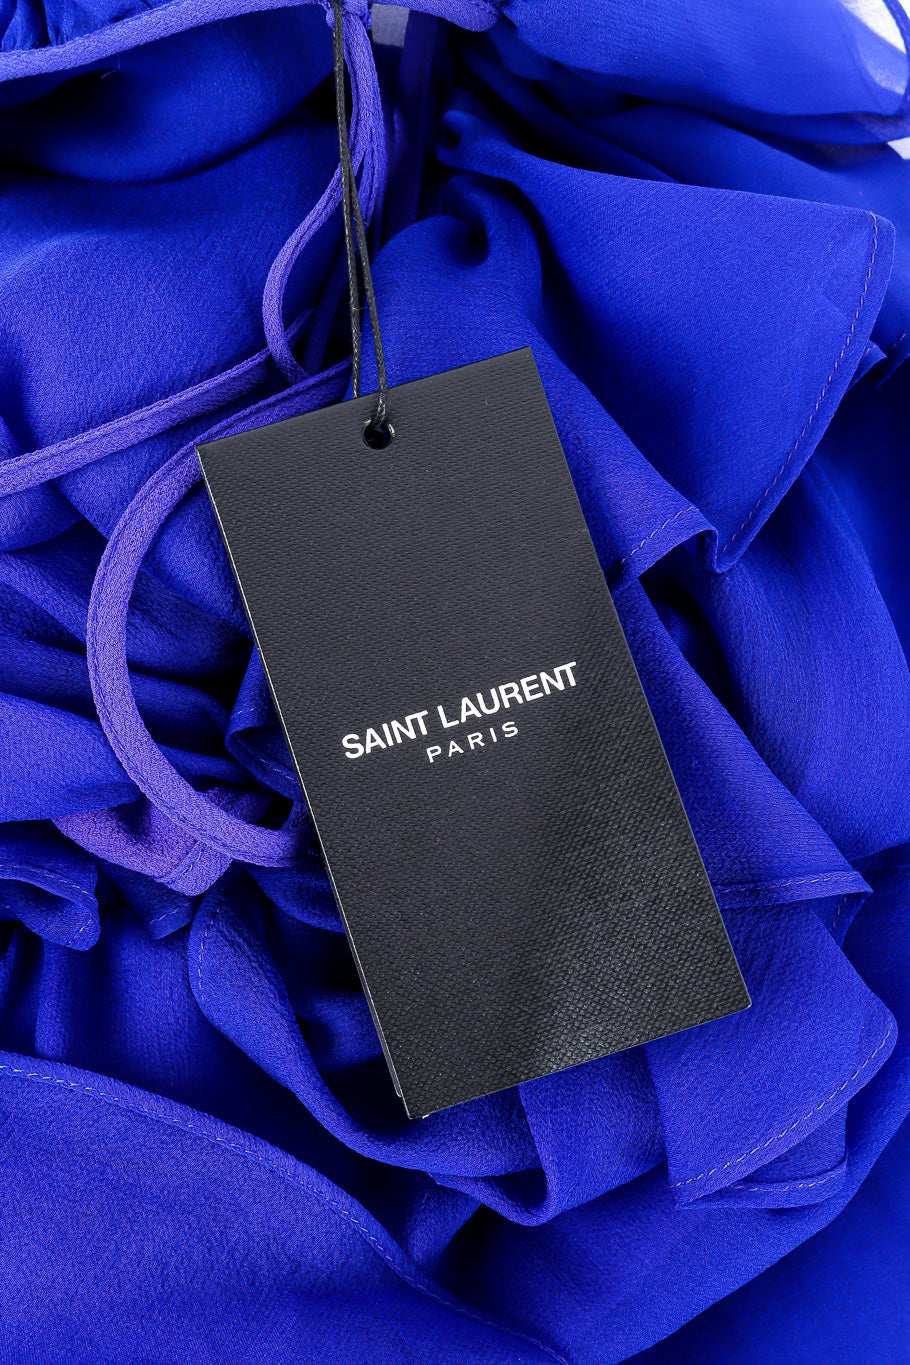 Saint Laurent 2020 Fall Sheer Silk Ruffle Dress original tag closeup @Recessla